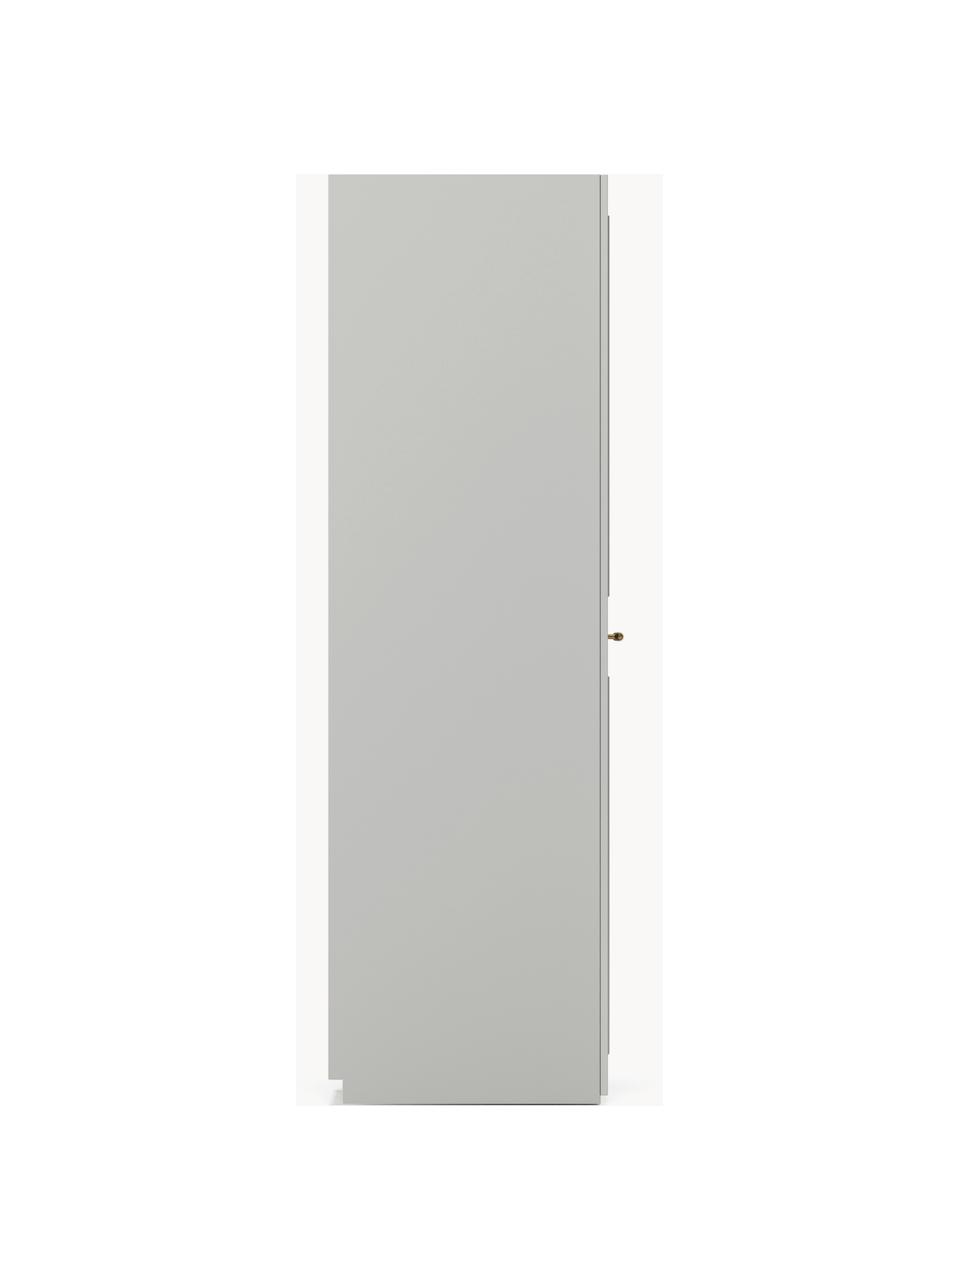 Szafa modułowa Charlotte, 1-drzwiowa, różne warianty, Korpus: płyta wiórowa pokryta mel, Szary, S 50 x W 200 cm, Basic